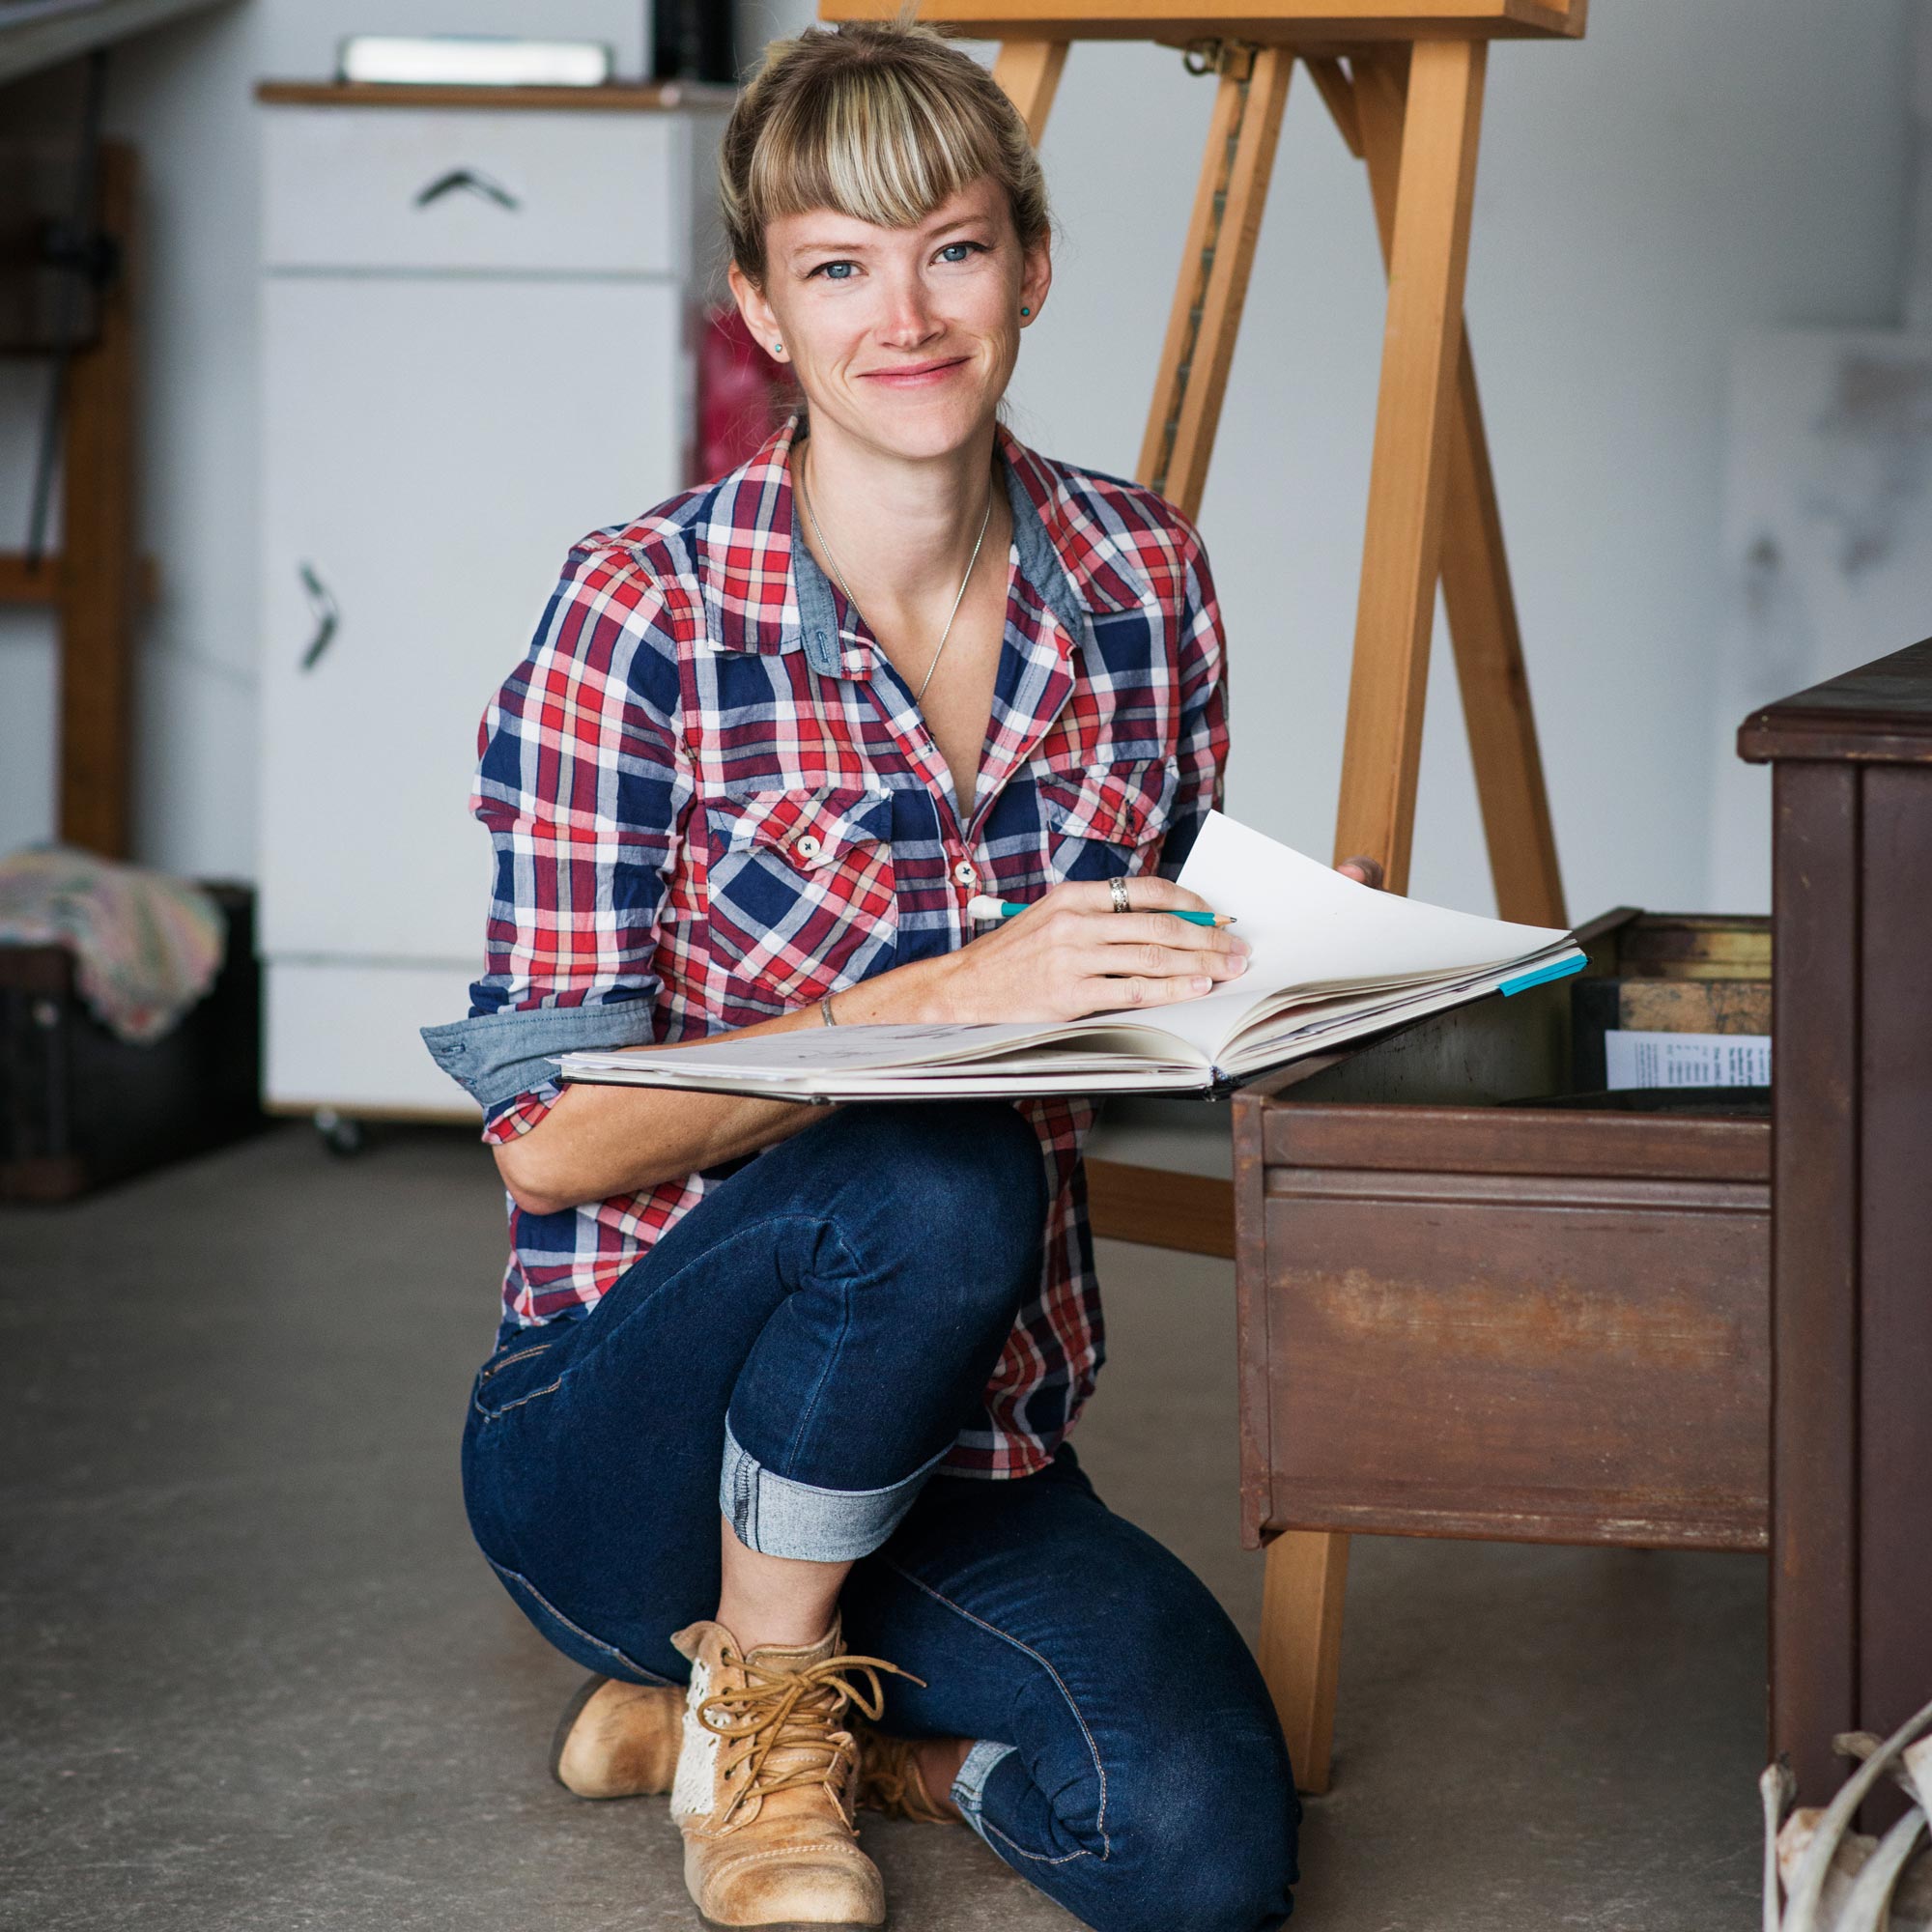 Leende kvinna med skjorta och jeans sitter på huk i ett rumm och bläddrar i en bok